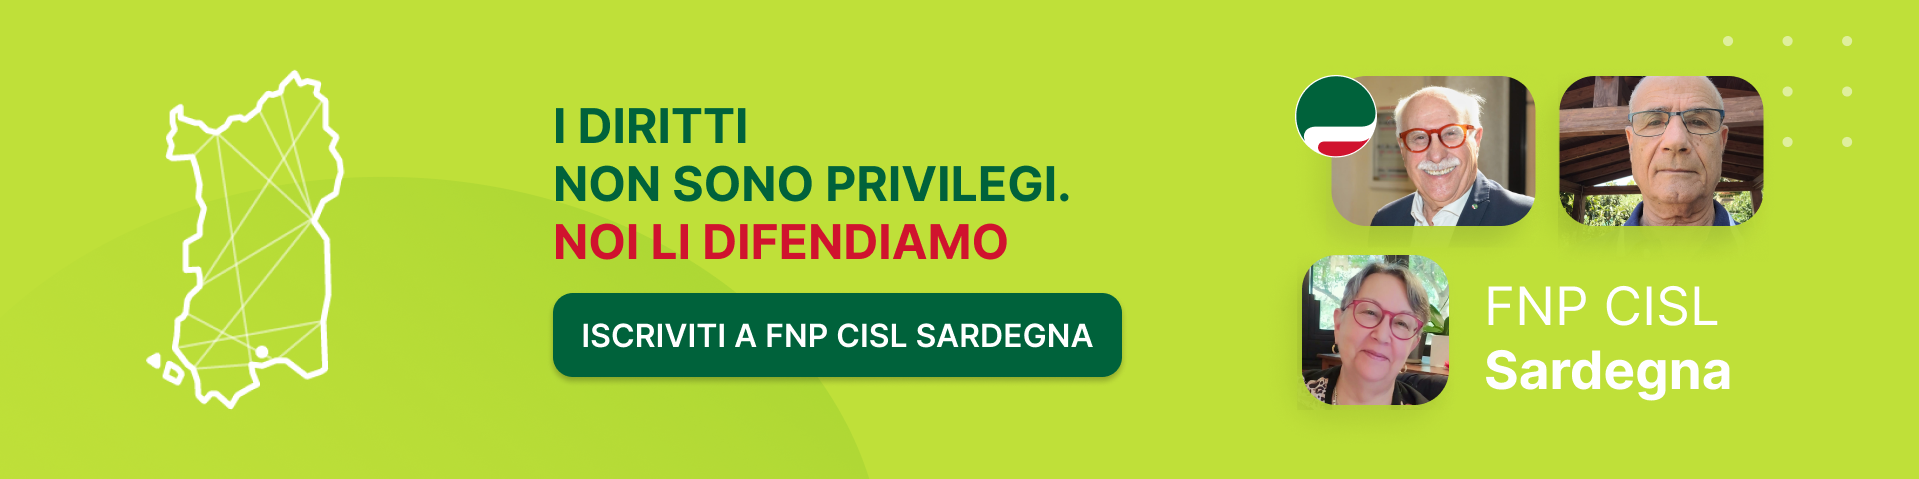 FNP CISL Sardegna - I diritti non sono privilegi. NOI LI DIFENDIAMO